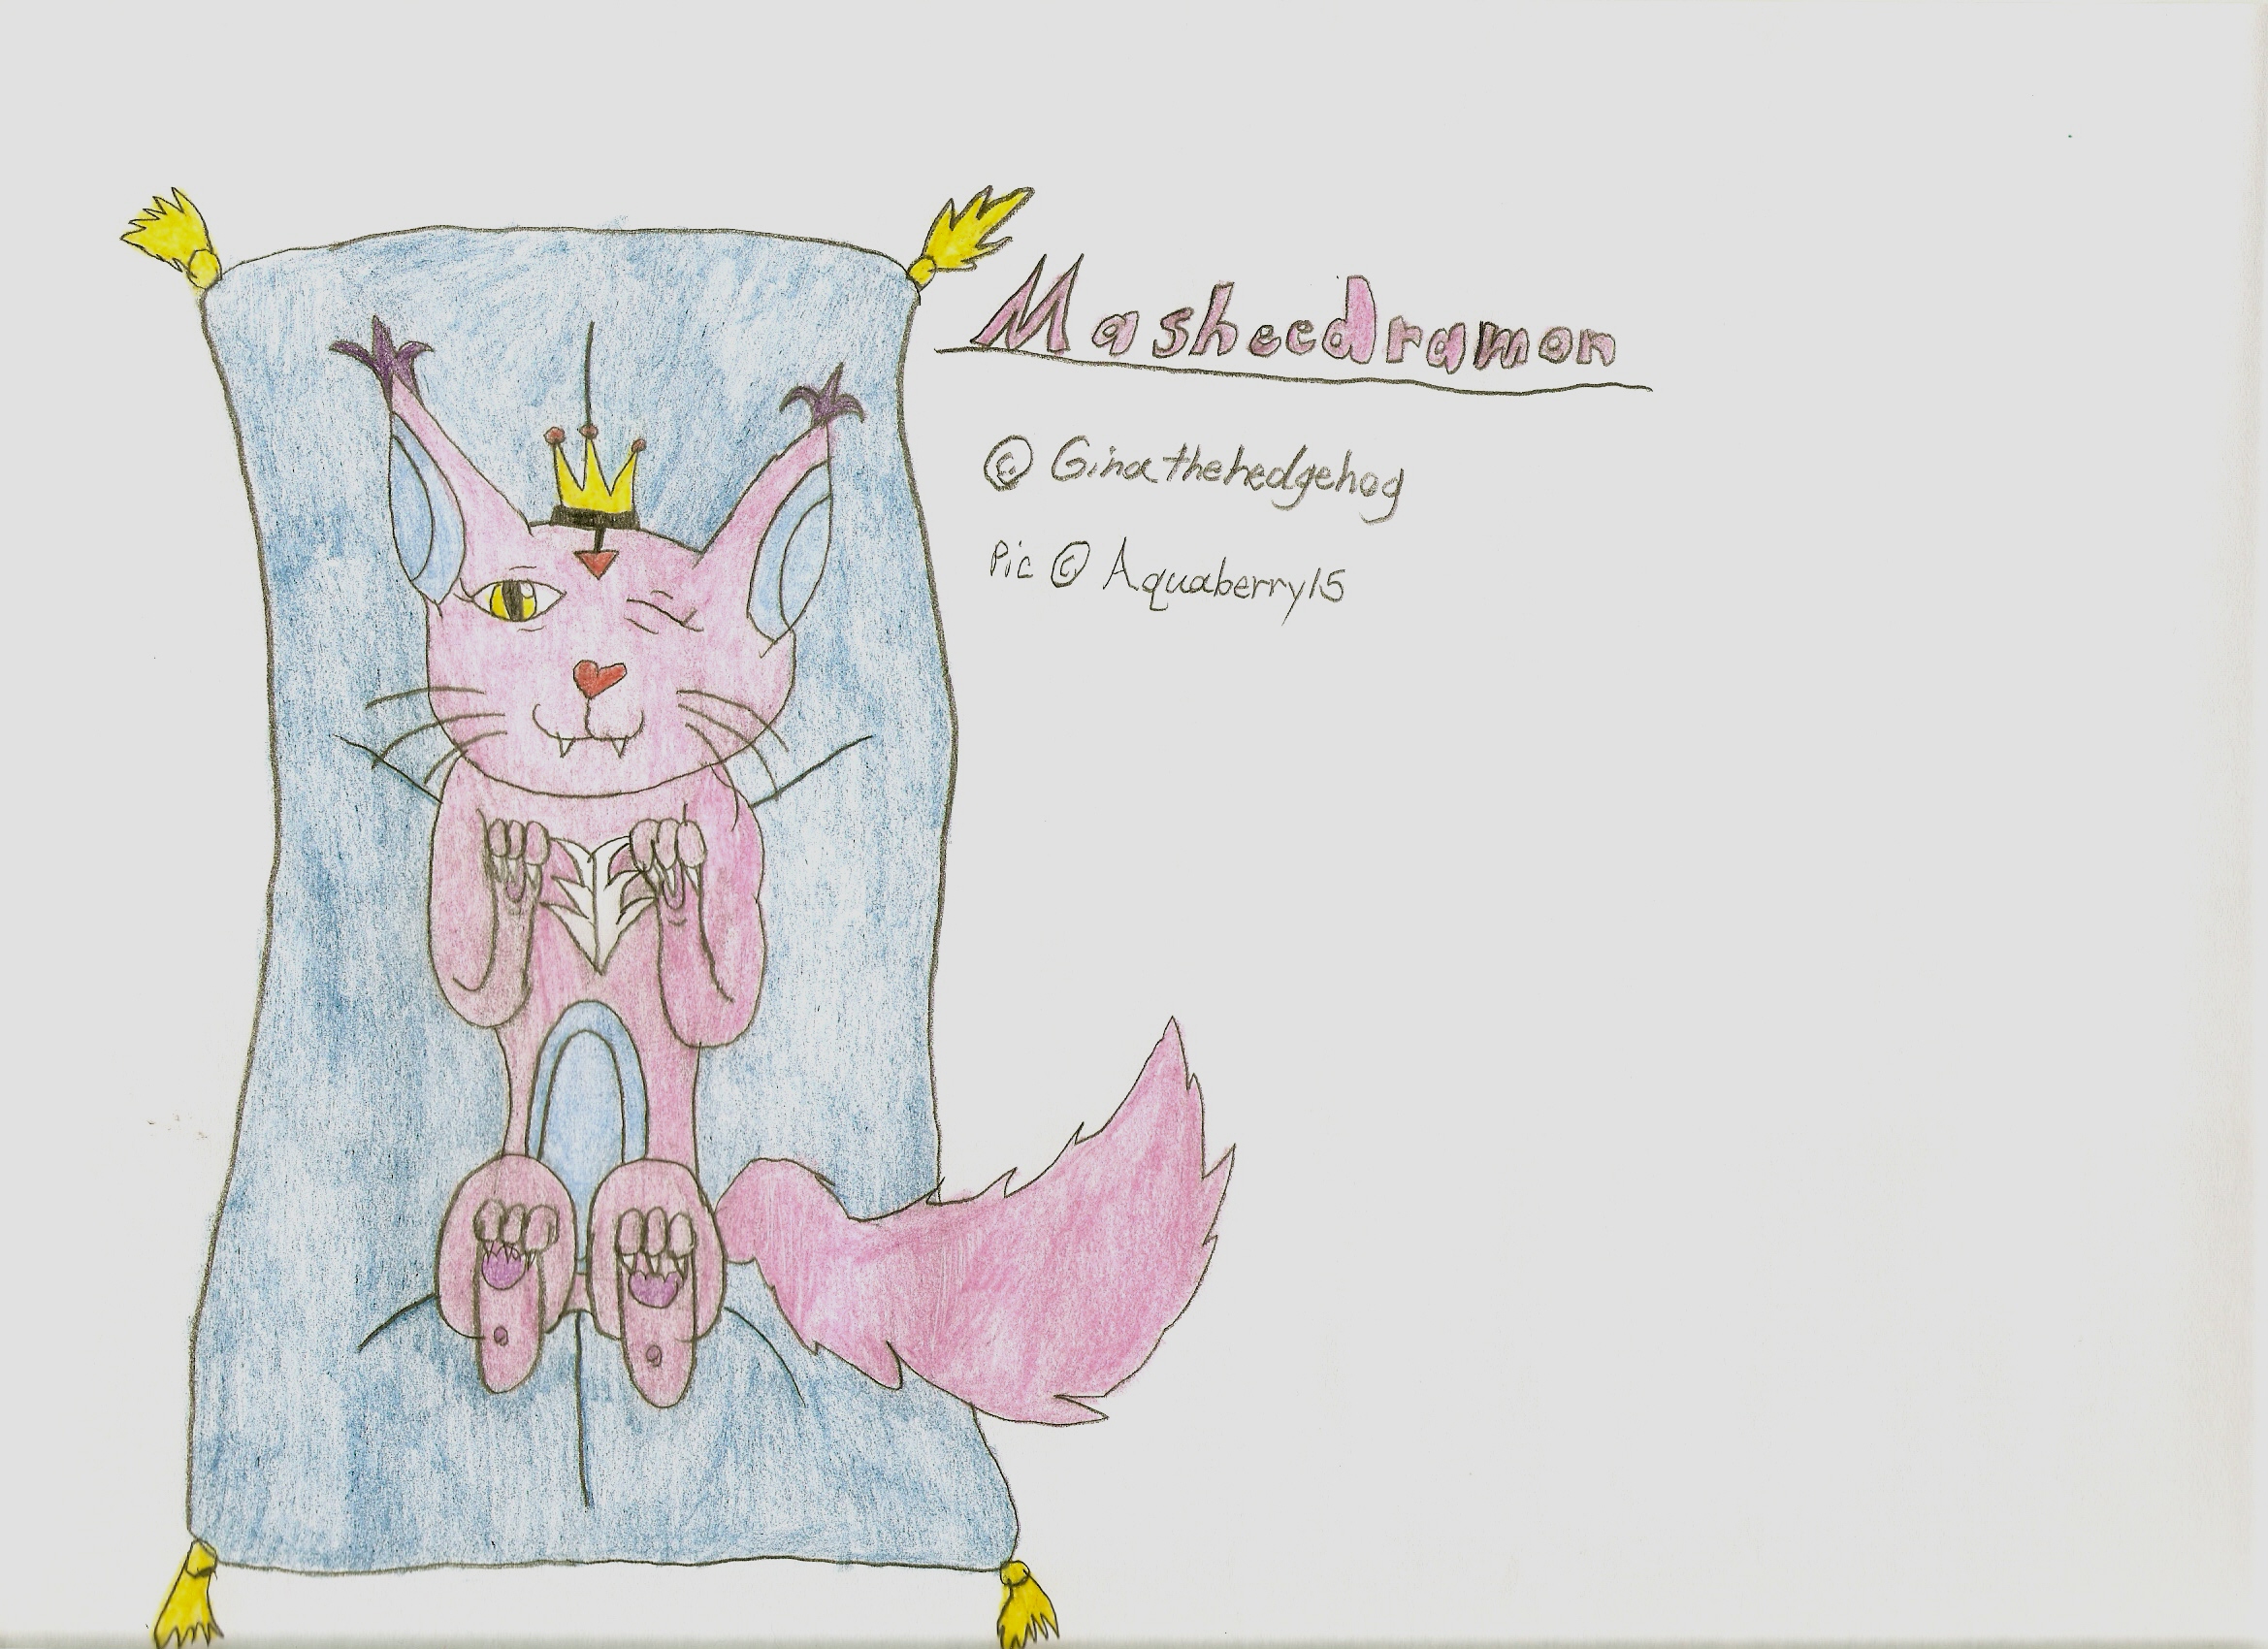 Masheedramon * Gift for Ginathehedgehog* by Aquaberry15